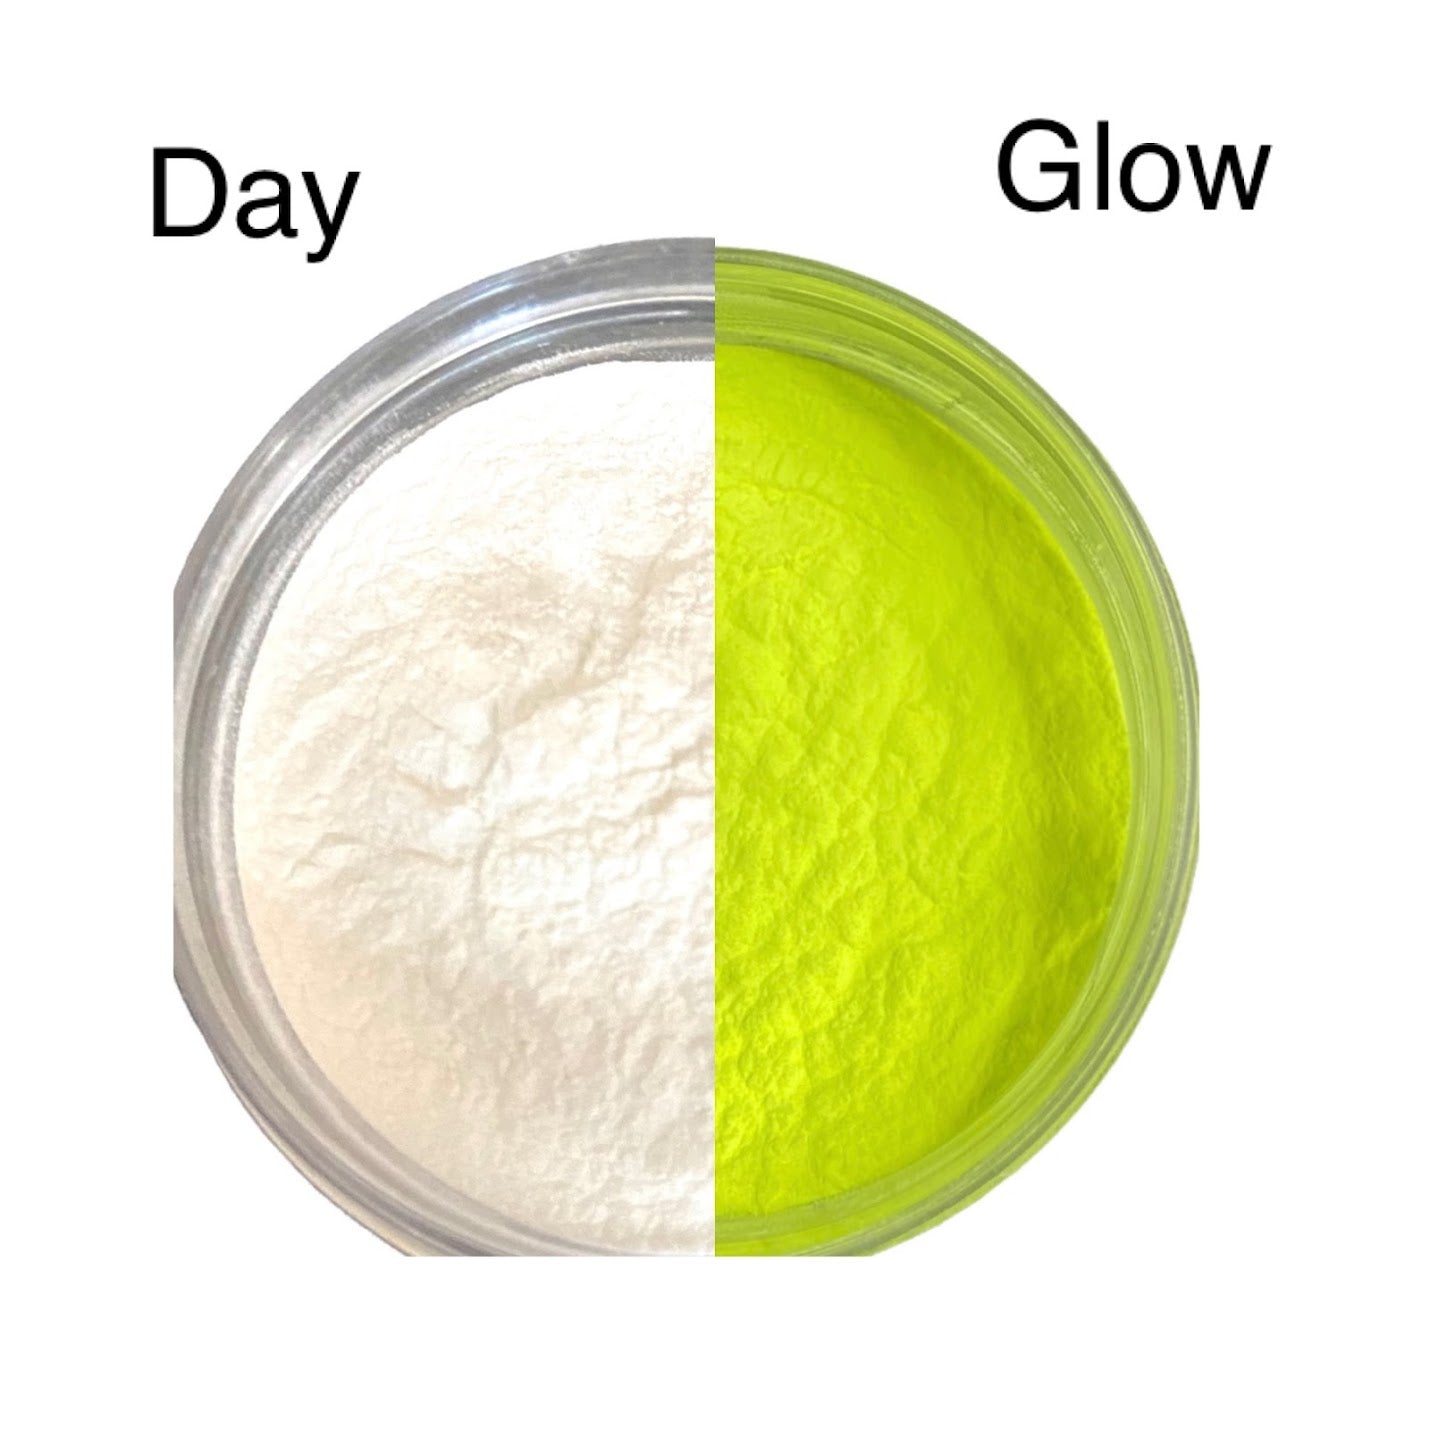 White to Yellow-green Glow Powder